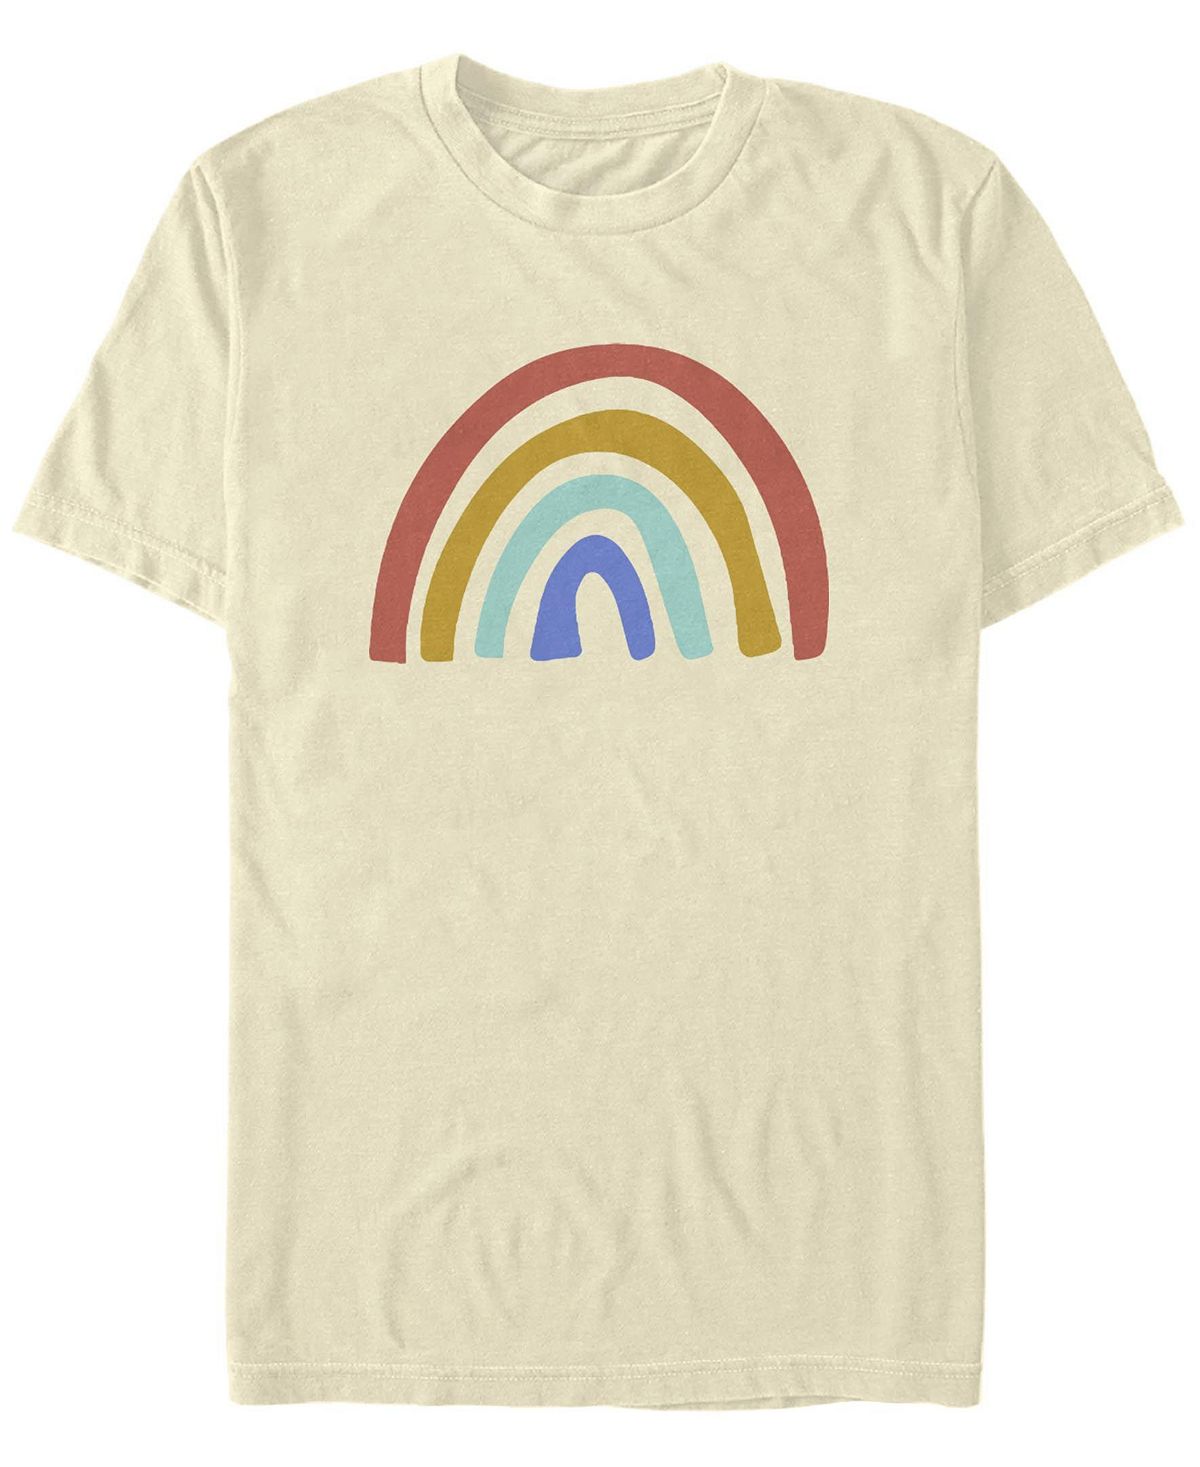 Мужская футболка с круглым вырезом rainbow club с короткими рукавами Fifth Sun мужская футболка с короткими рукавами rainbow monster box up scooby doo fifth sun черный